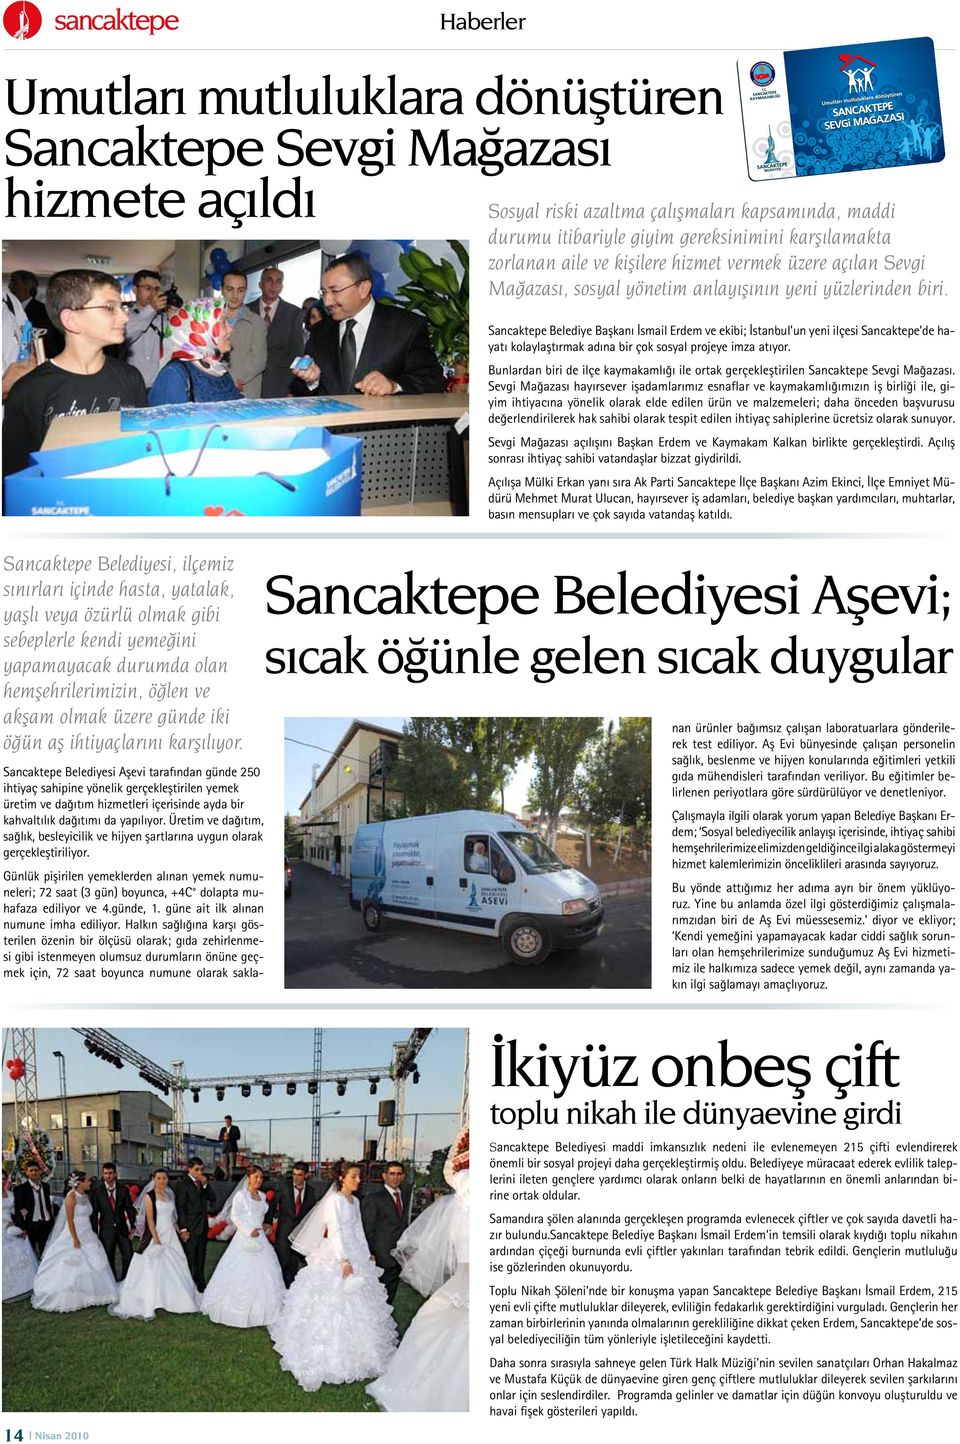 Sancaktepe Belediye Başkanı İsmail Erdem ve ekibi; İstanbul un yeni ilçesi Sancaktepe de hayatı kolaylaştırmak adına bir çok sosyal projeye imza atıyor.